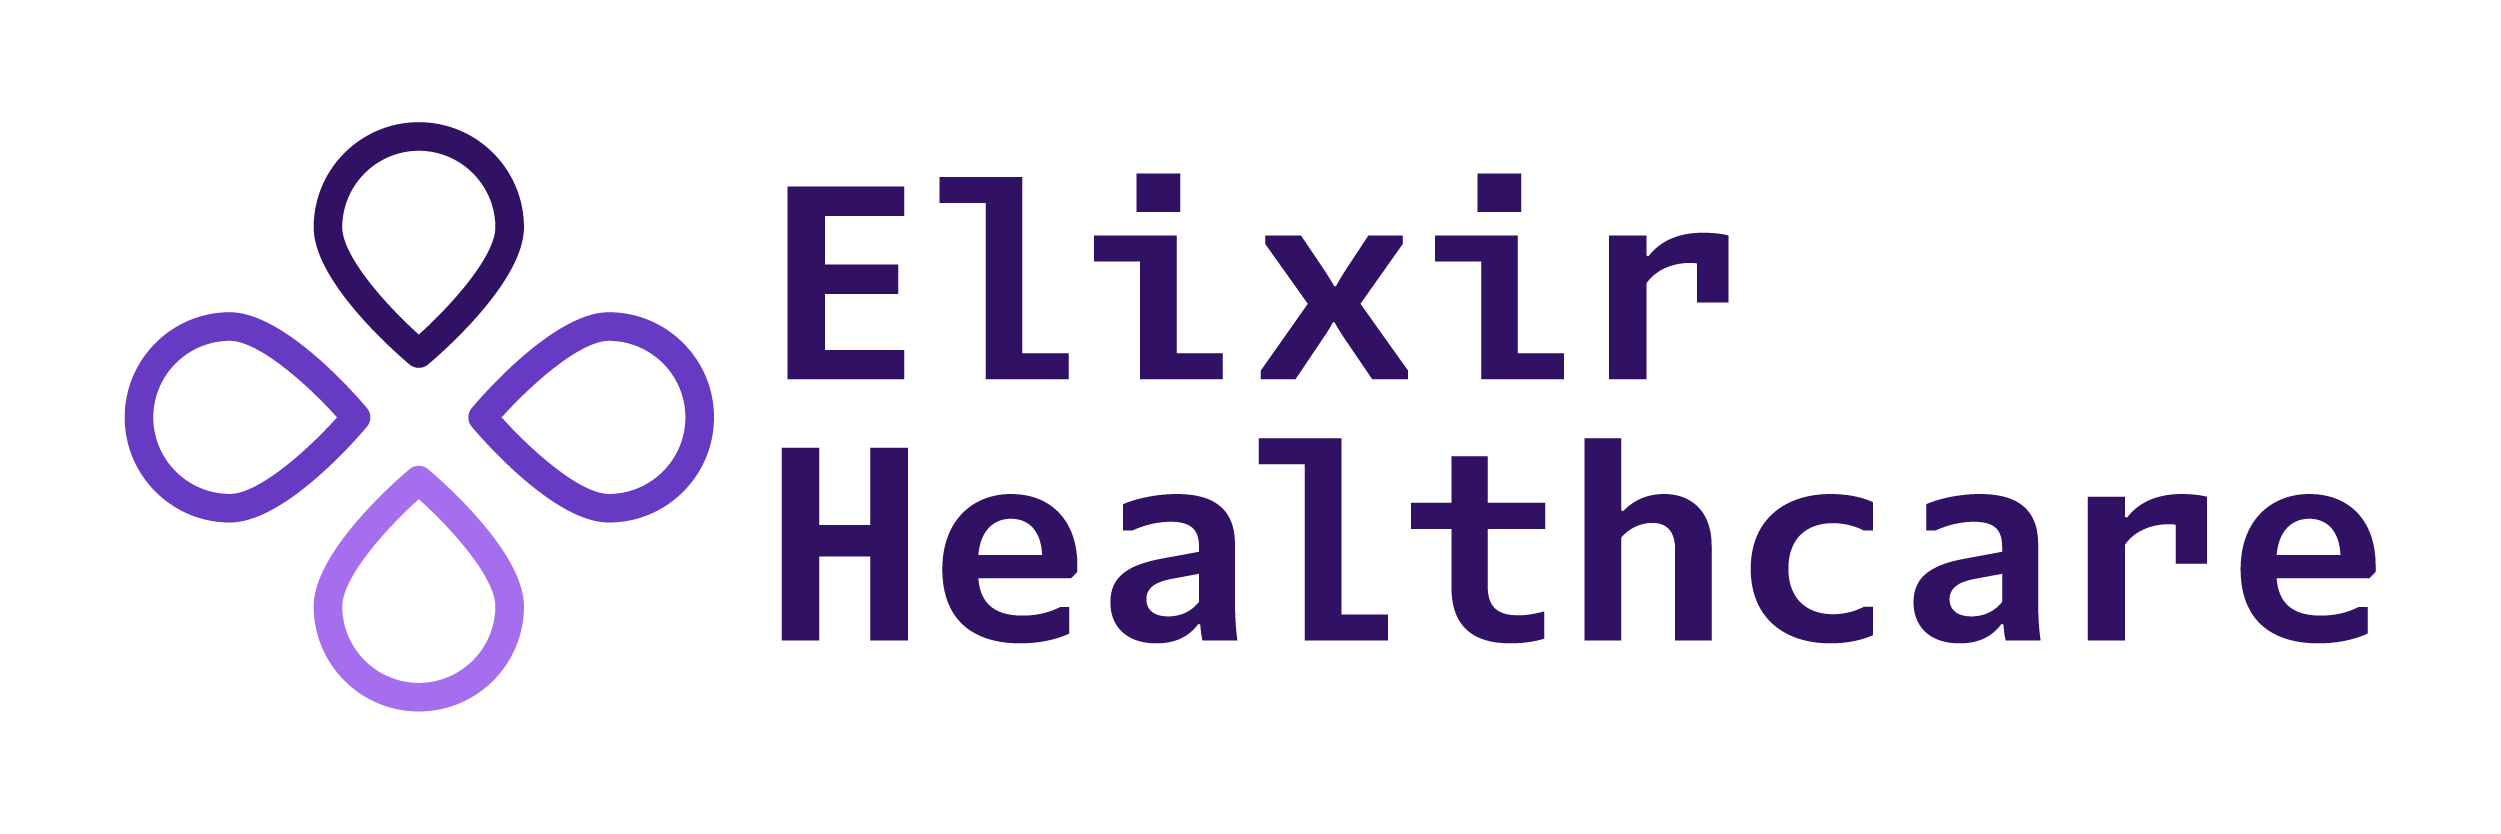 Elixir Healthcare Logo